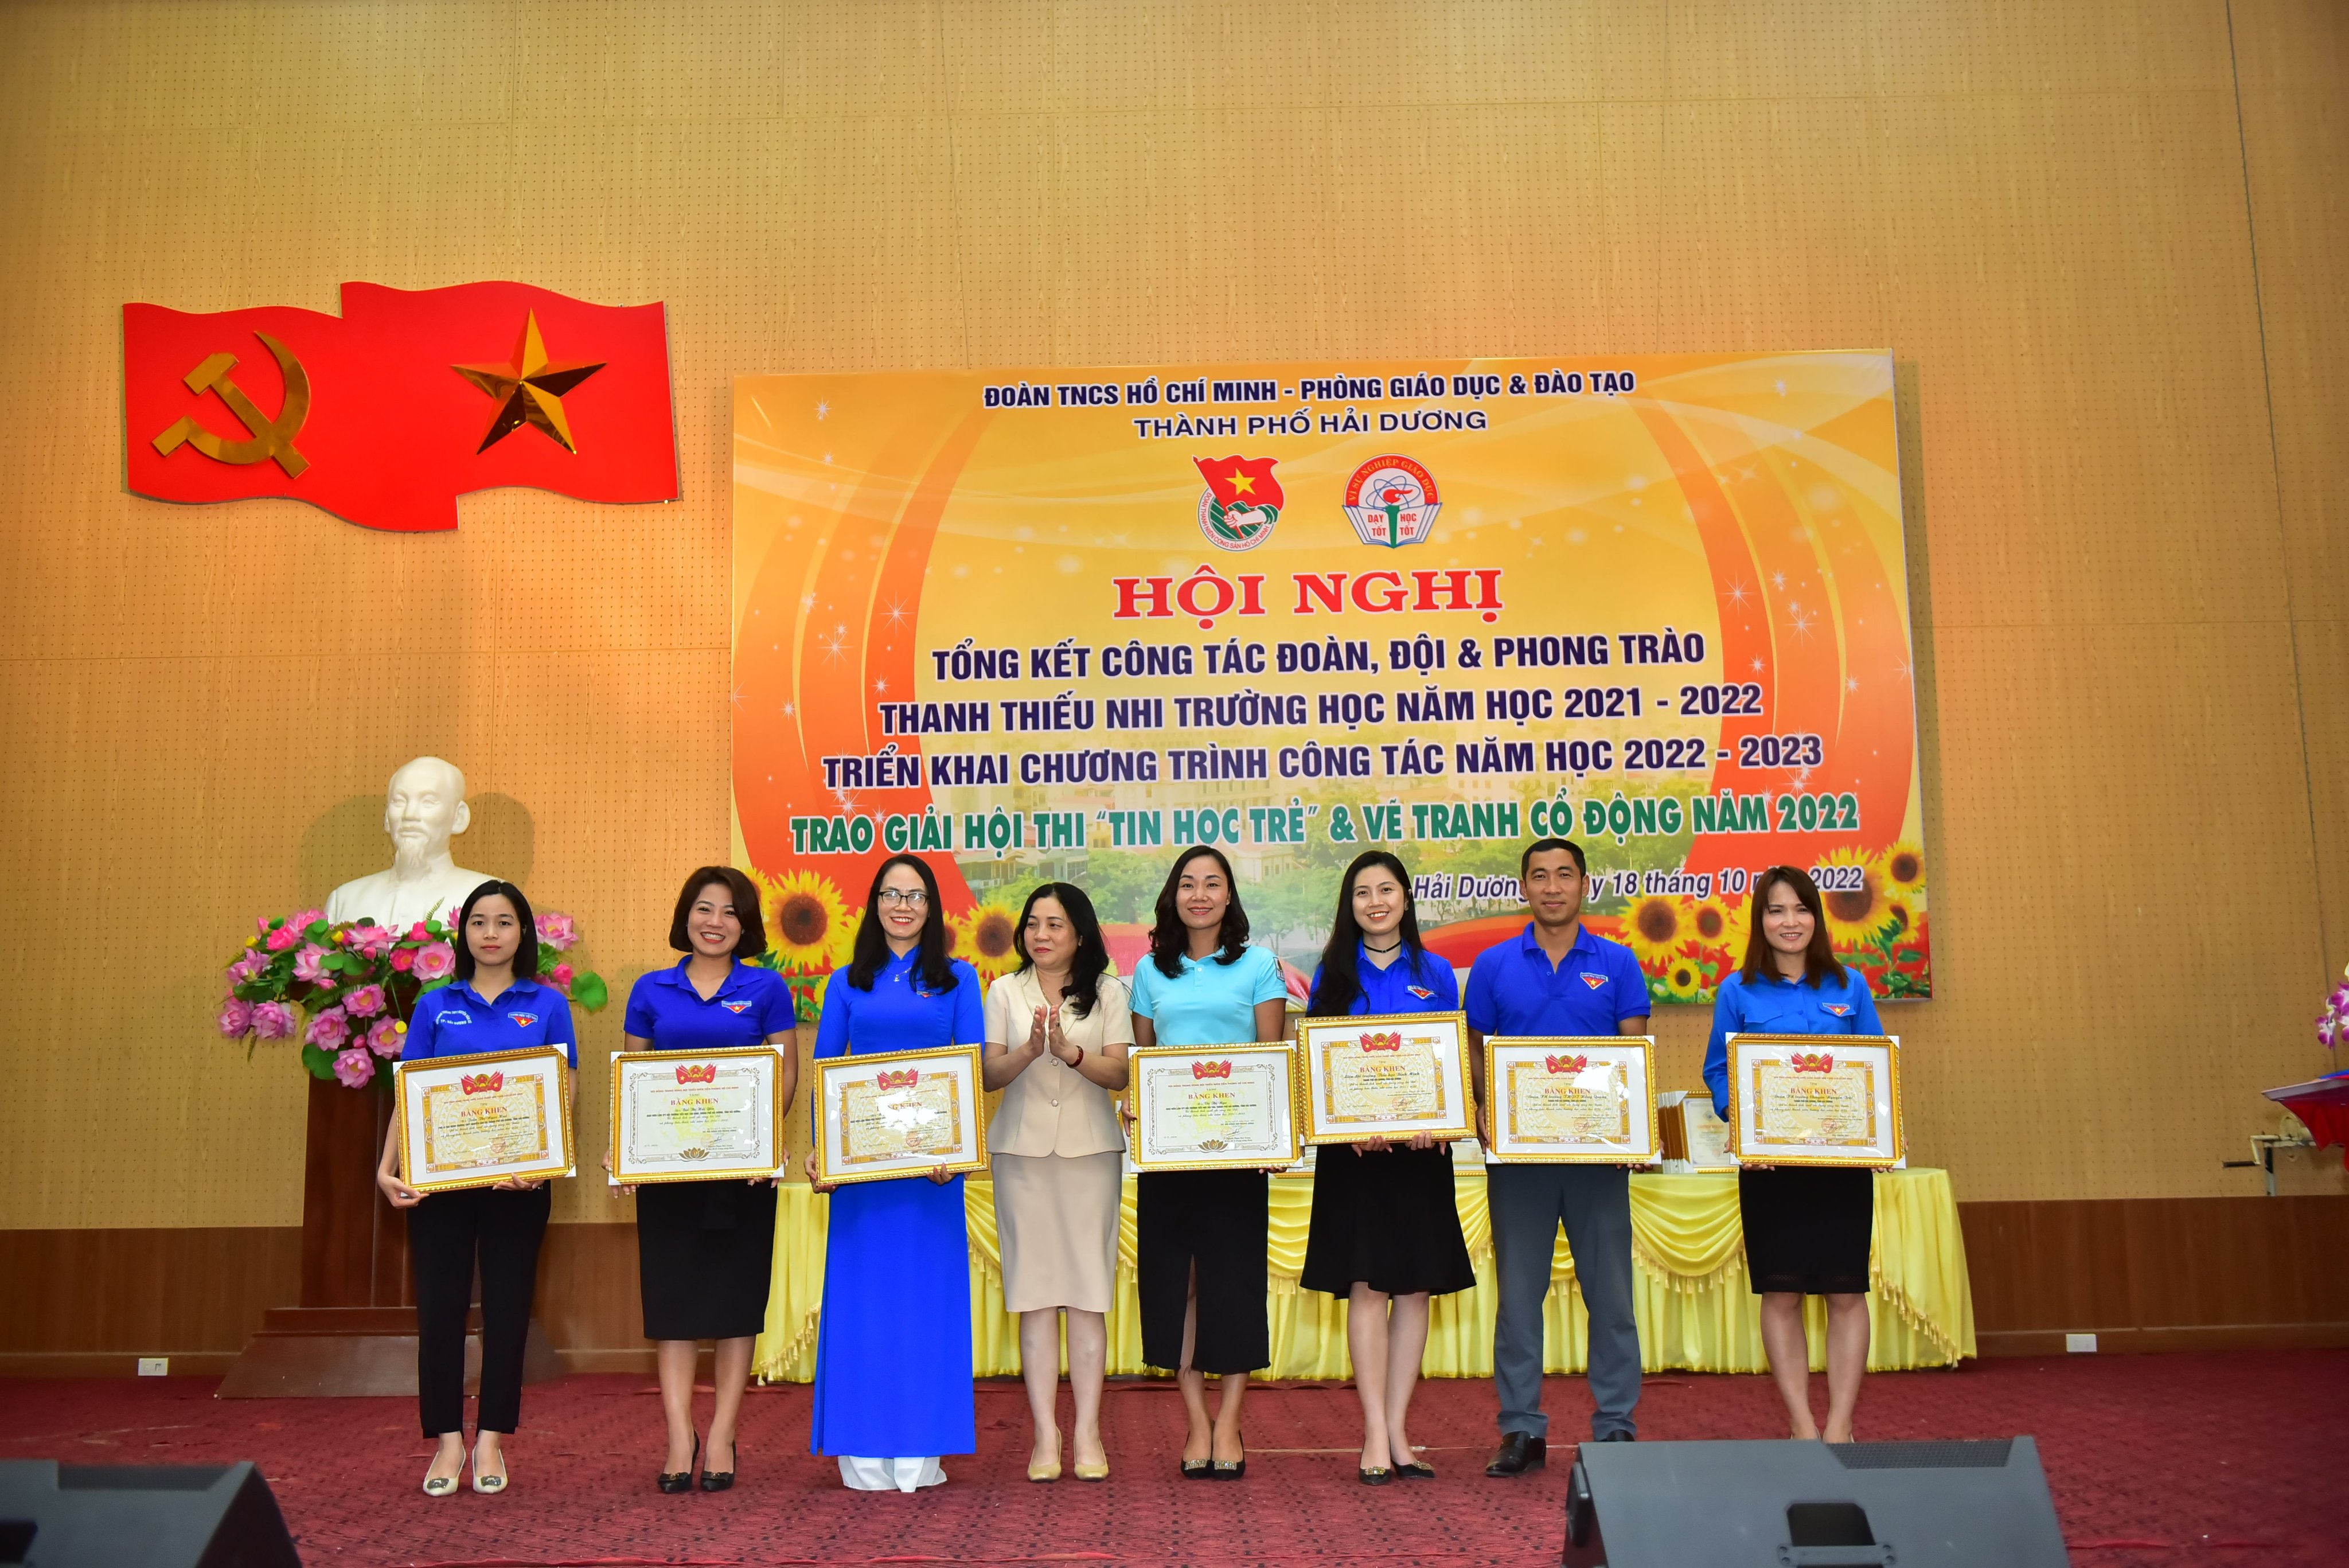 THPT Chuyên Nguyễn Trãi đón nhận nhiều bằng khen tại Hội nghị tổng kết công tác Đoàn, Đội và phong trào thanh thiếu nhi năm học 2021-2022